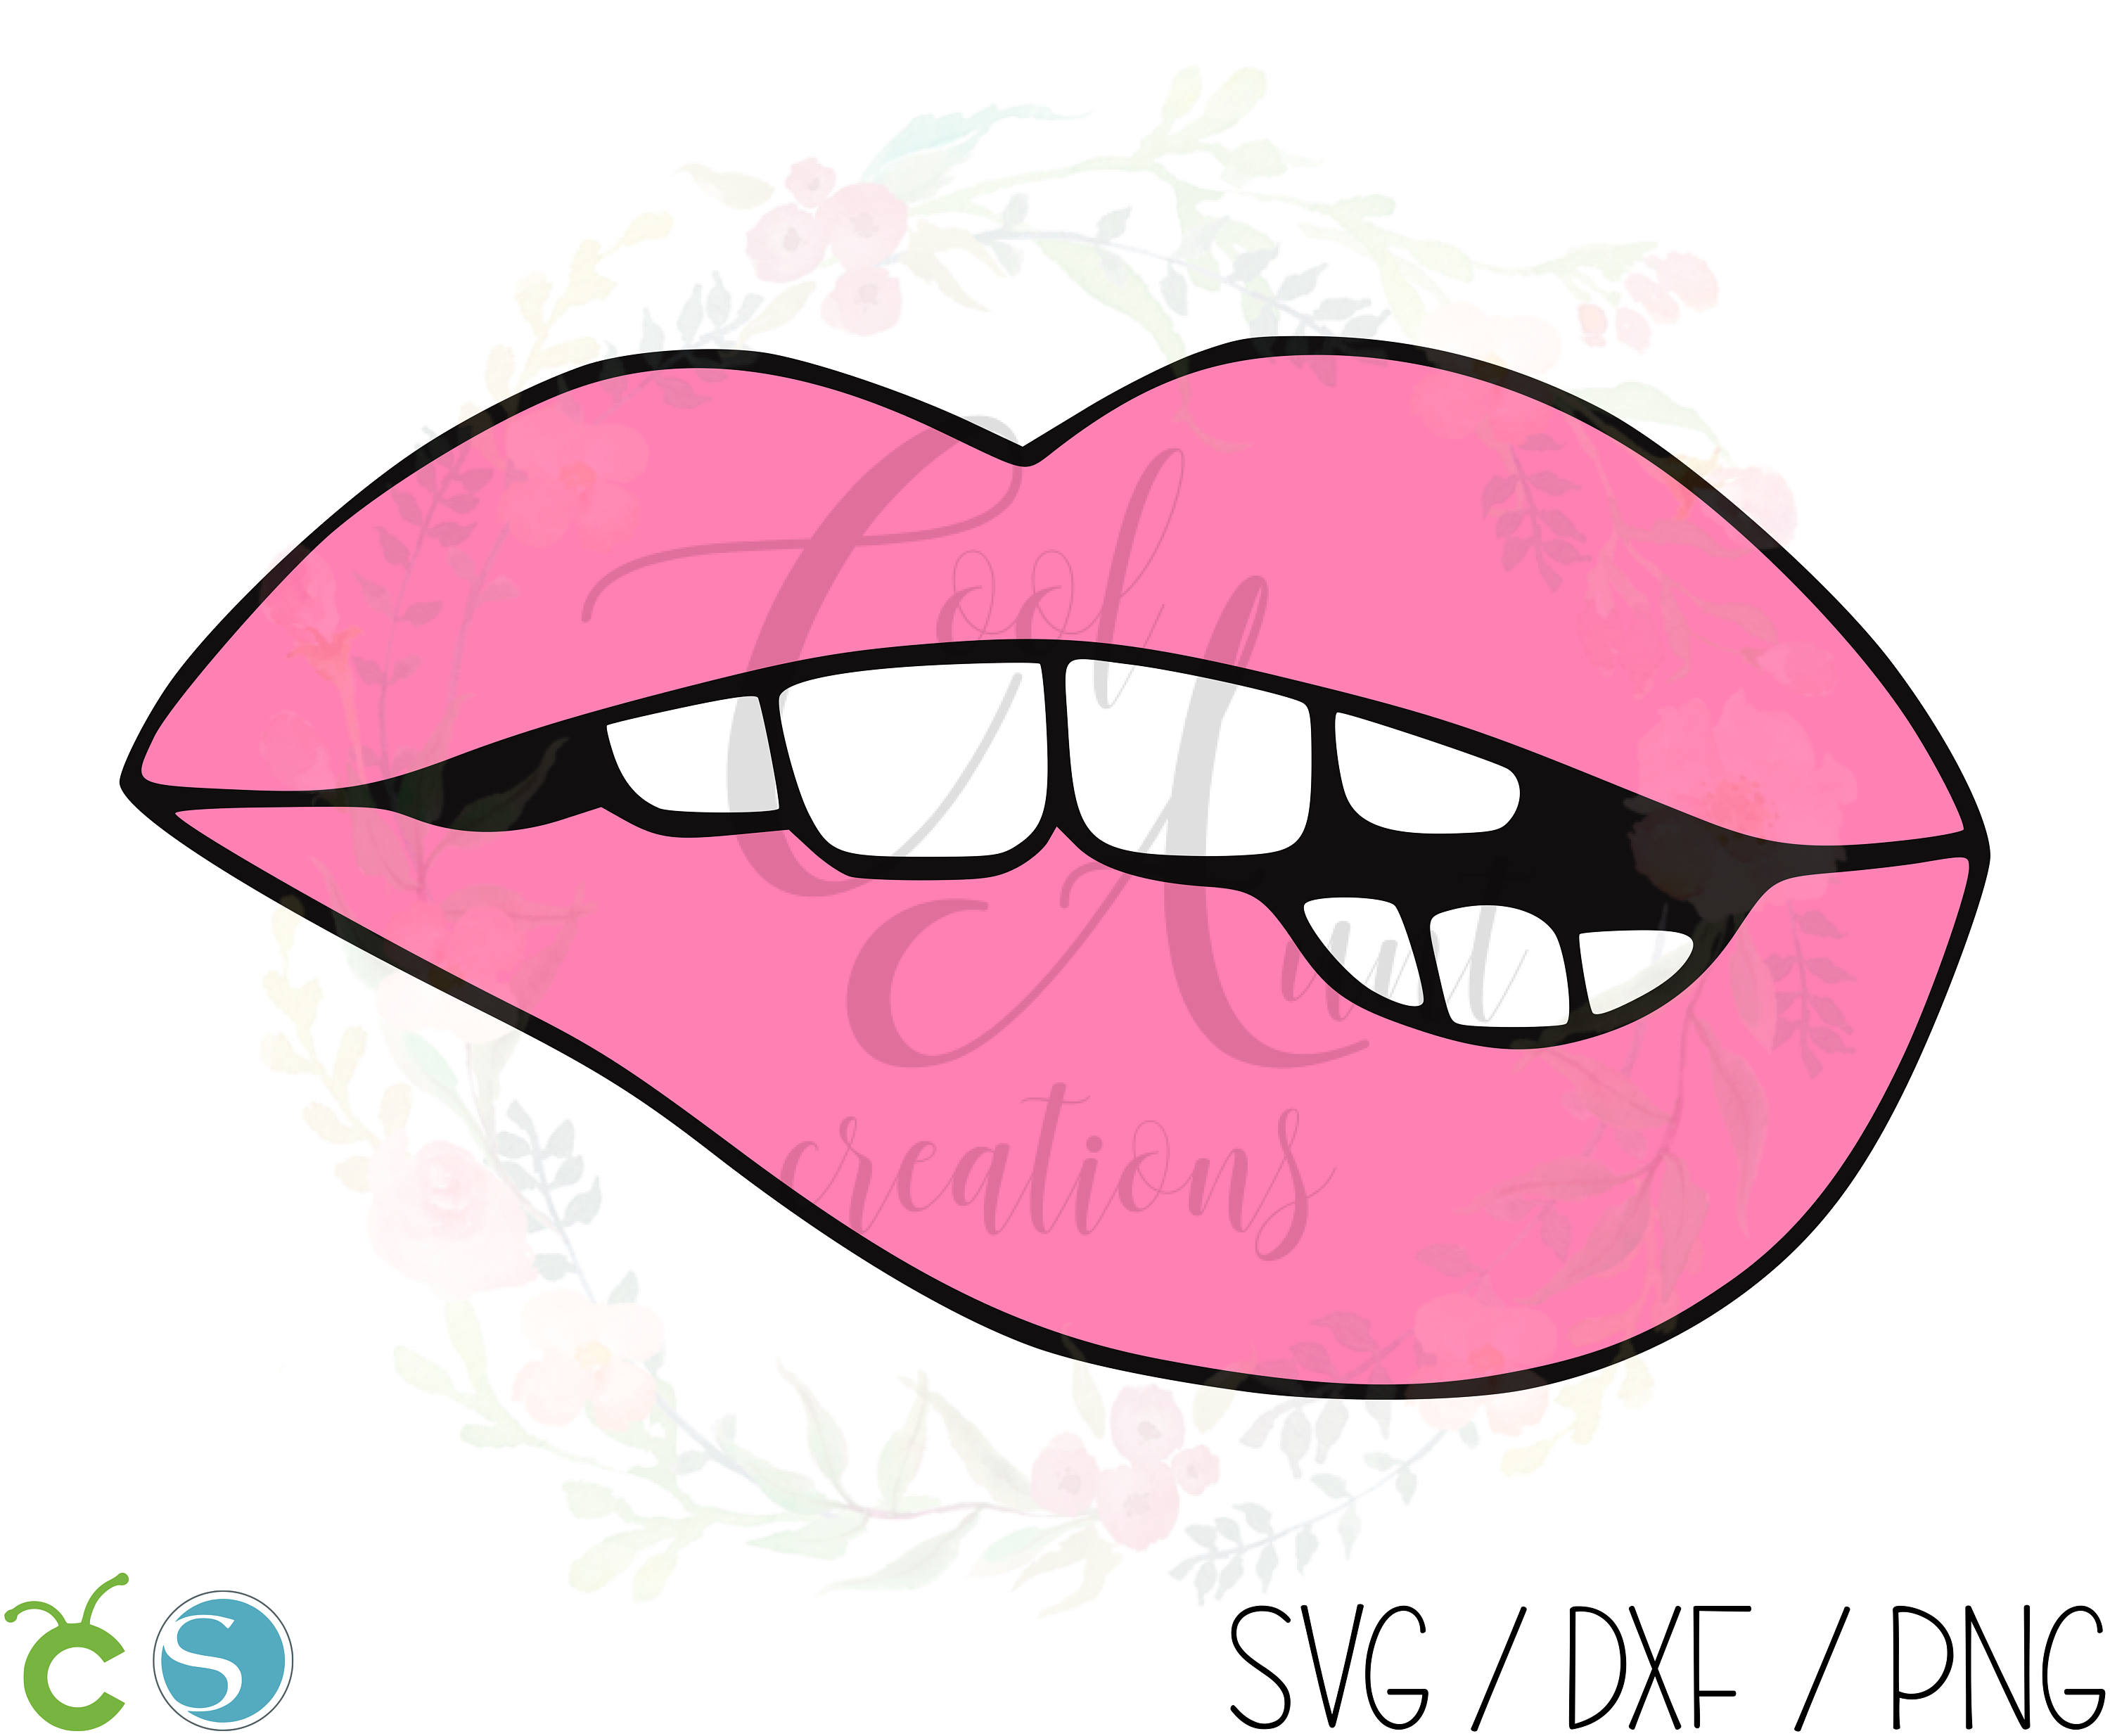 Bitting Lip / SVG / DXF / PNG / Digital Download